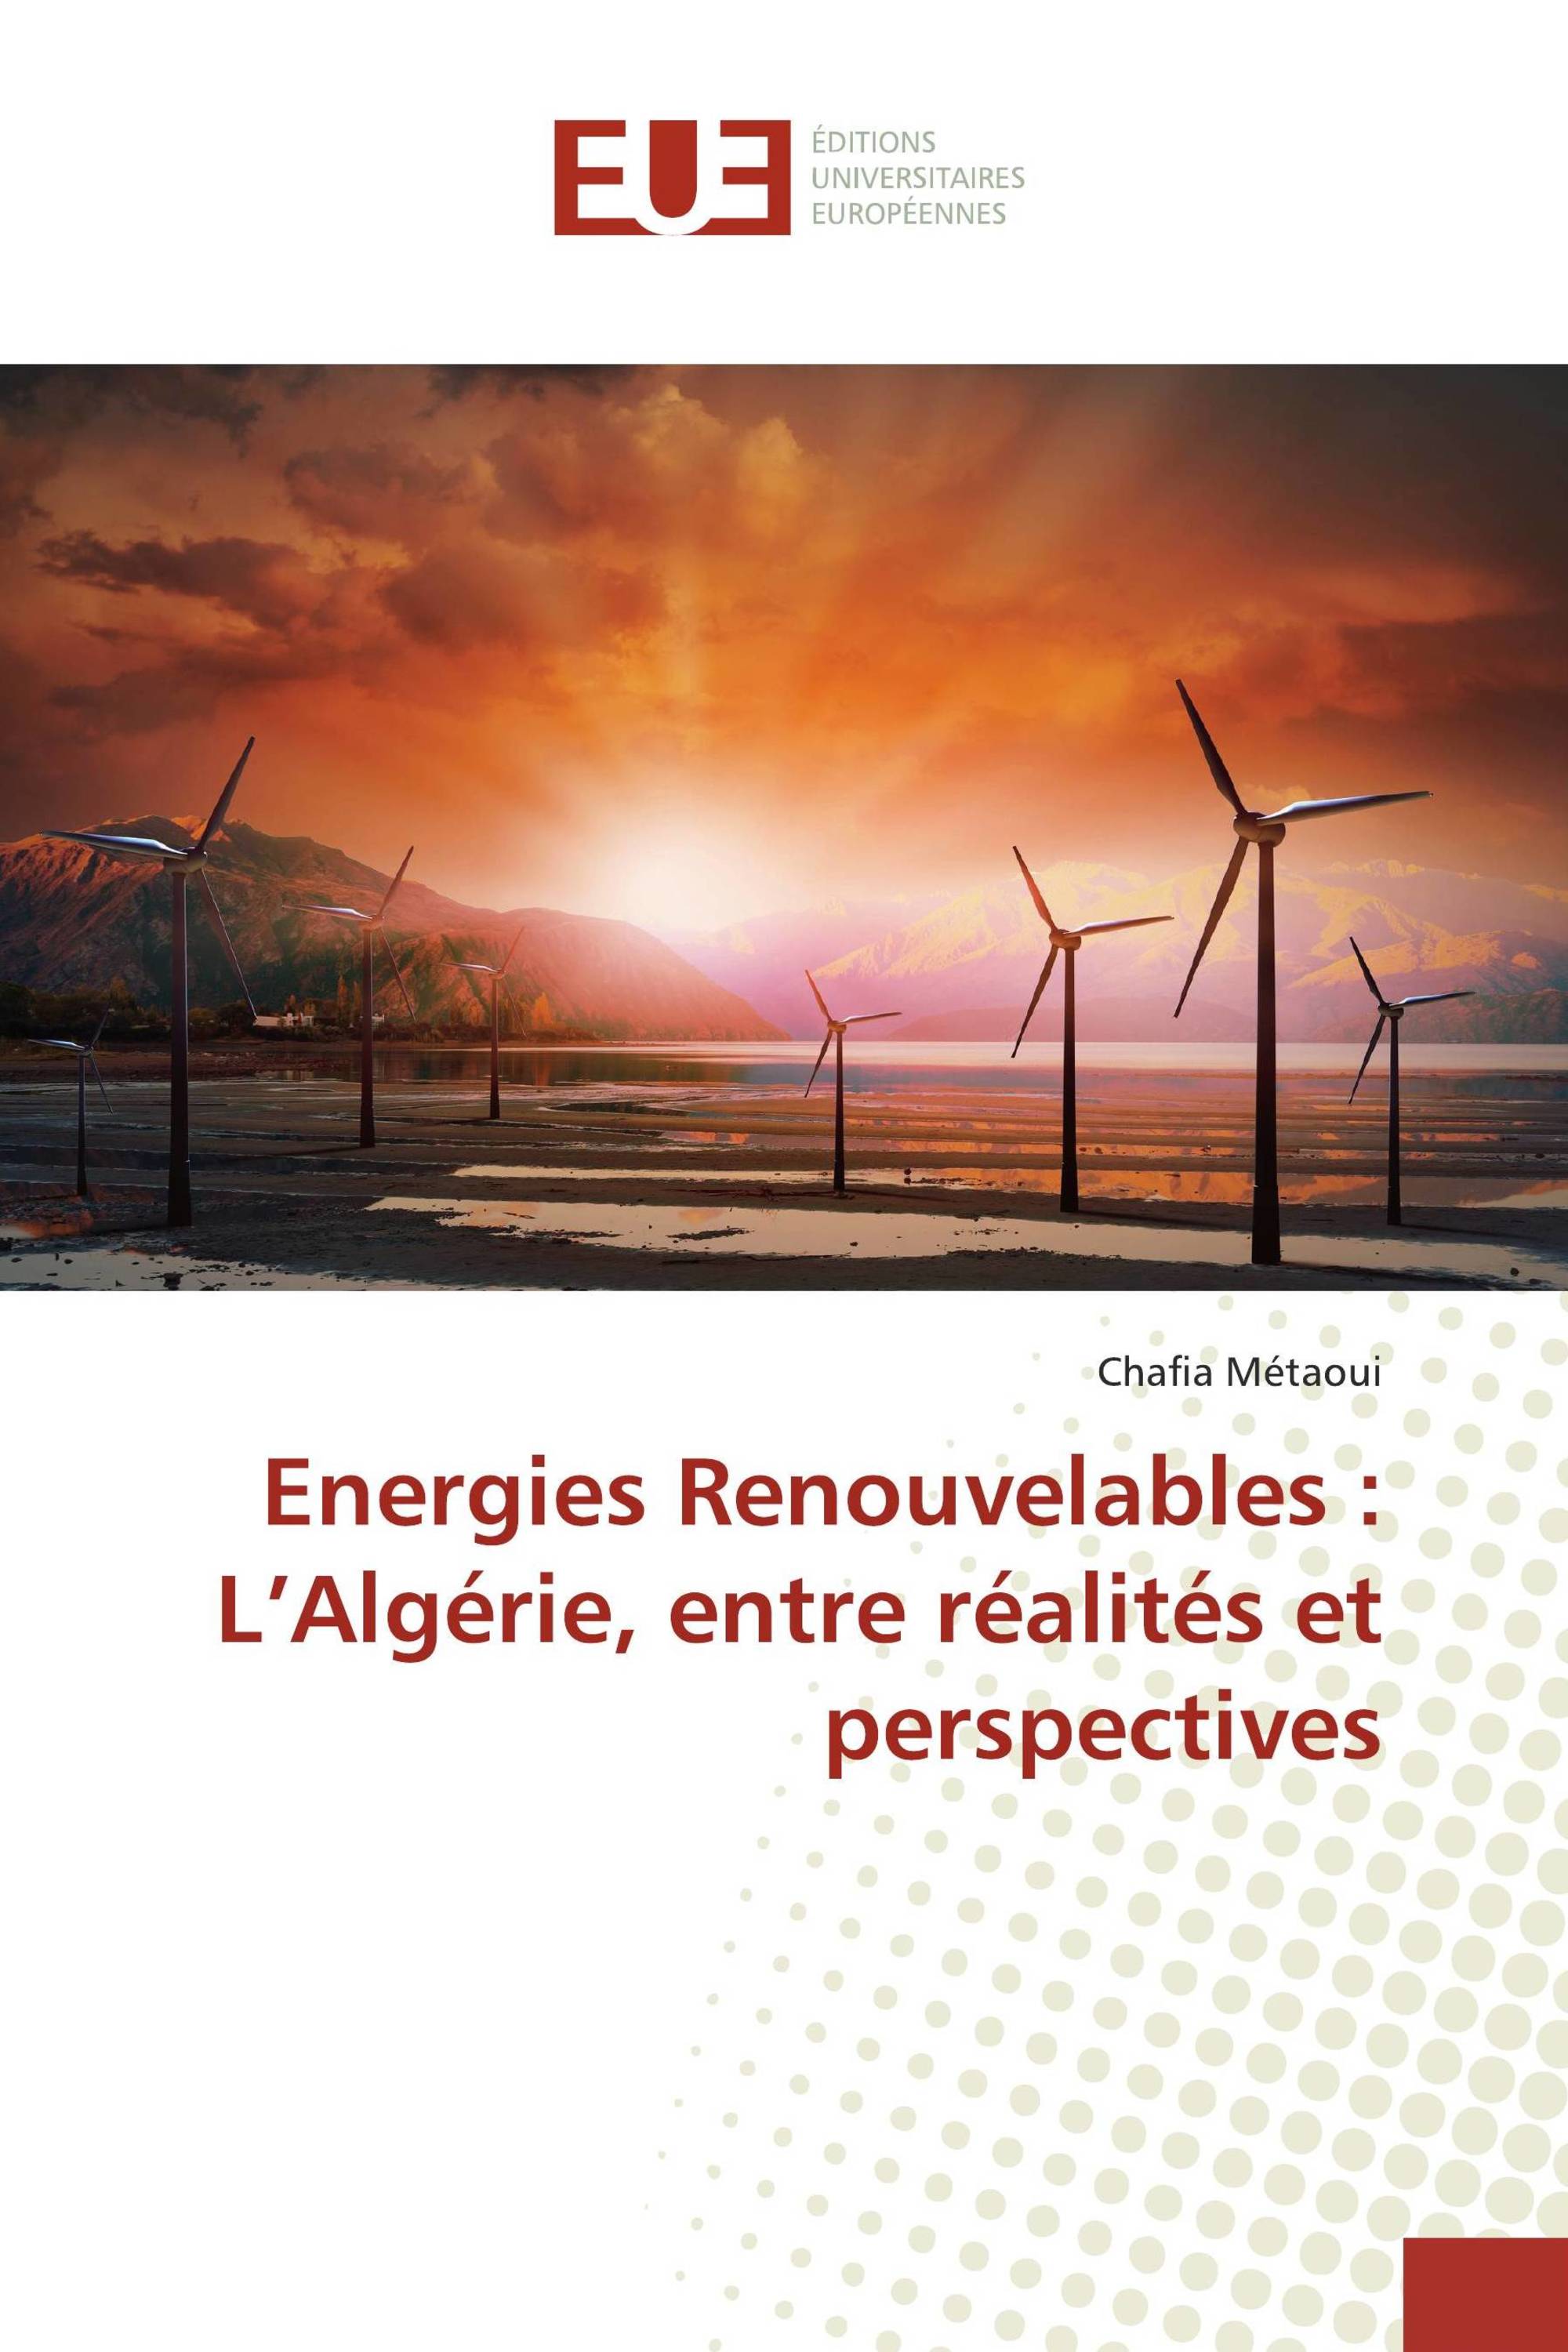 Energies Renouvelables : L’Algérie, entre réalités et perspectives